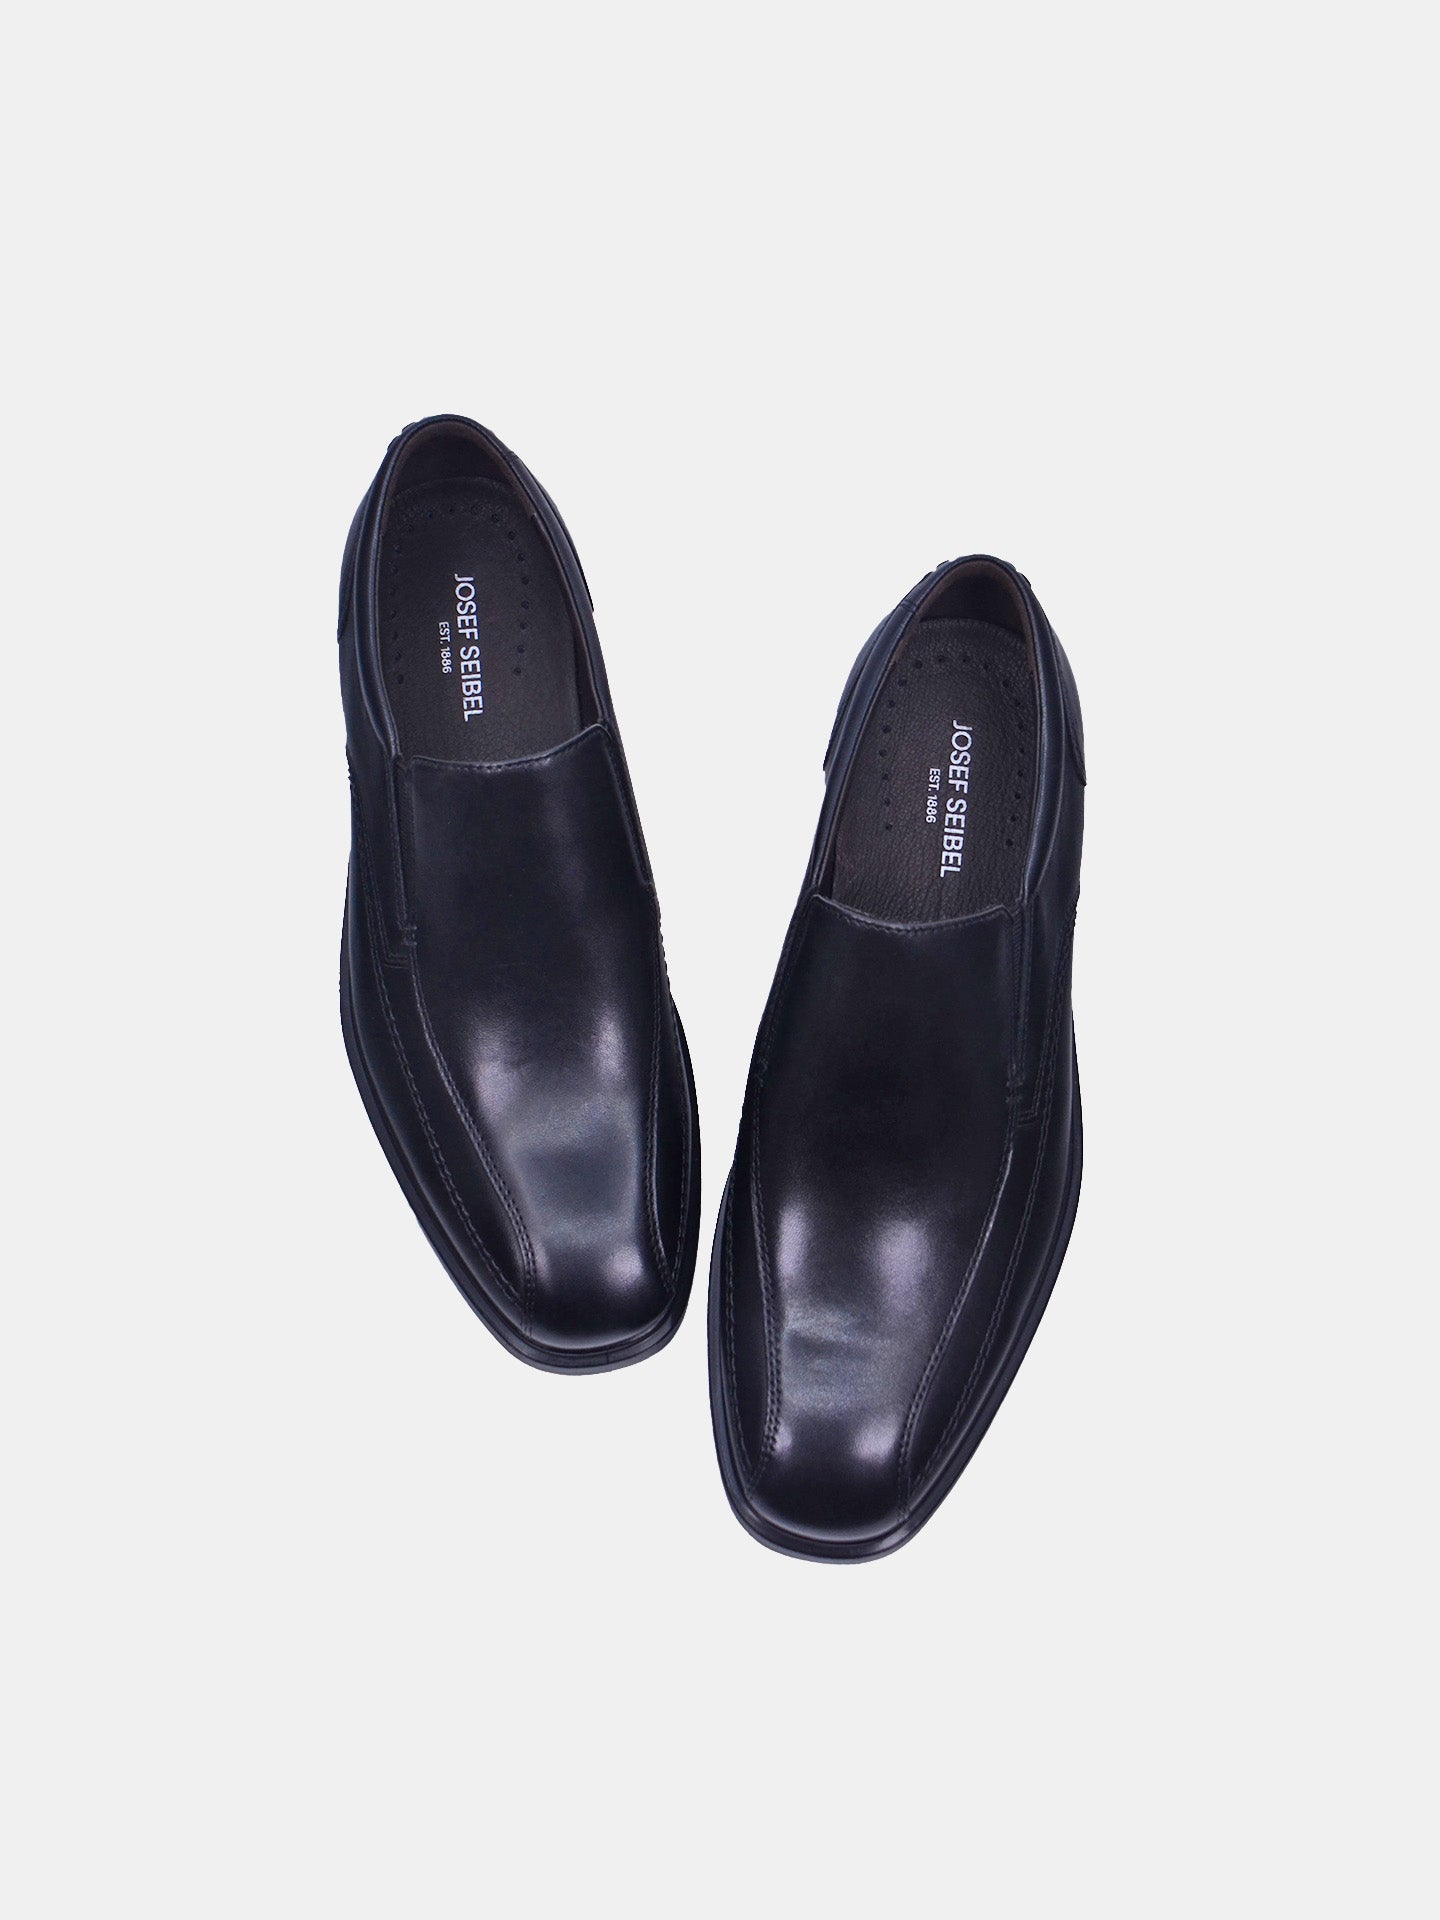 Josef Seibel M666-03 Men's Formal Shoes #color_Black